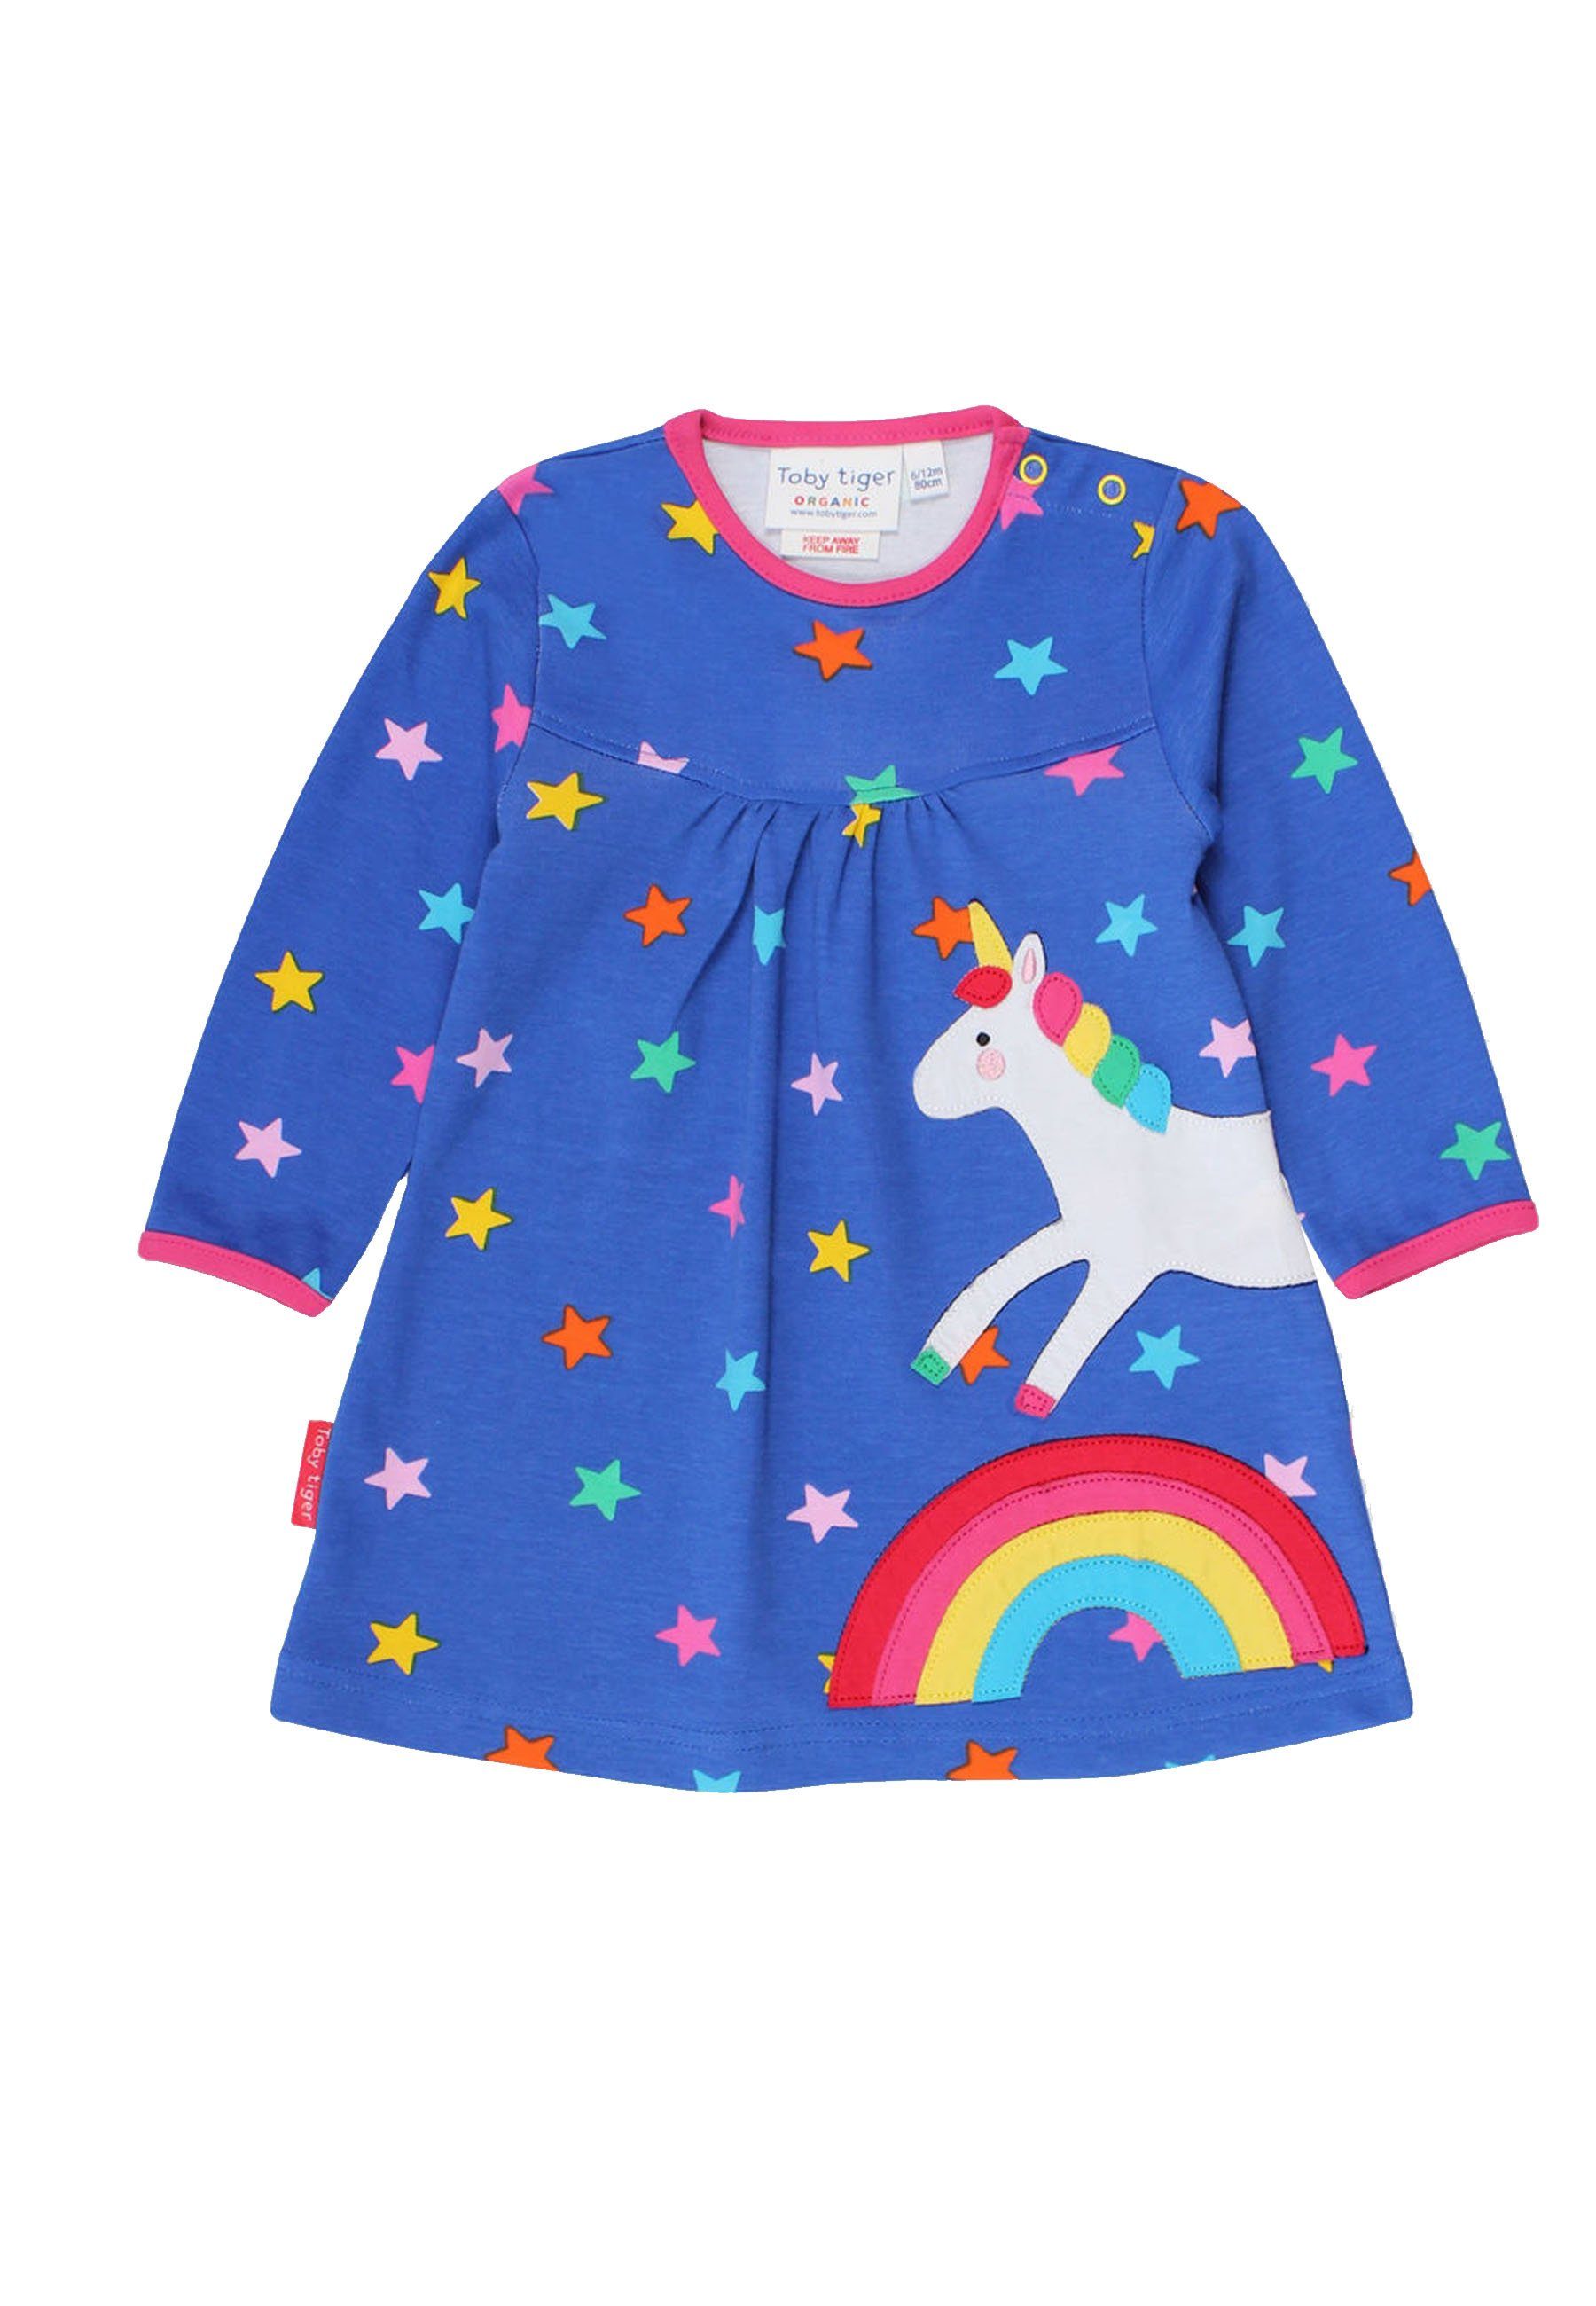 Toby Tiger Shirtkleid Kleid mit Einhorn und Regenbogen Applikation